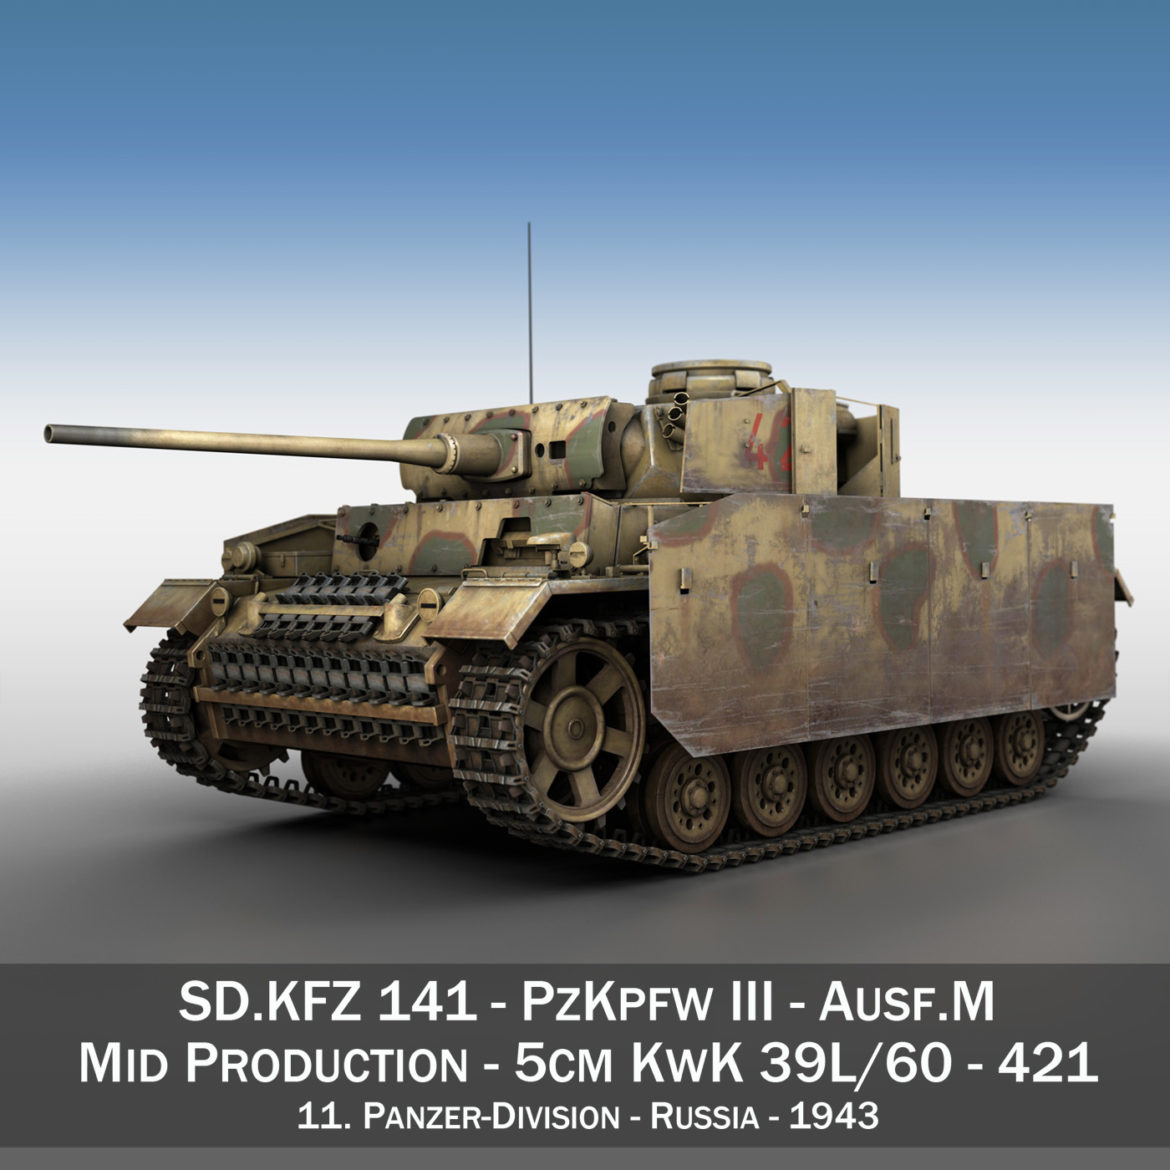 pzkpfw iii – panzer 3 – ausf.m – 421 3d model 3ds lwo lw lws obj c4d 306065